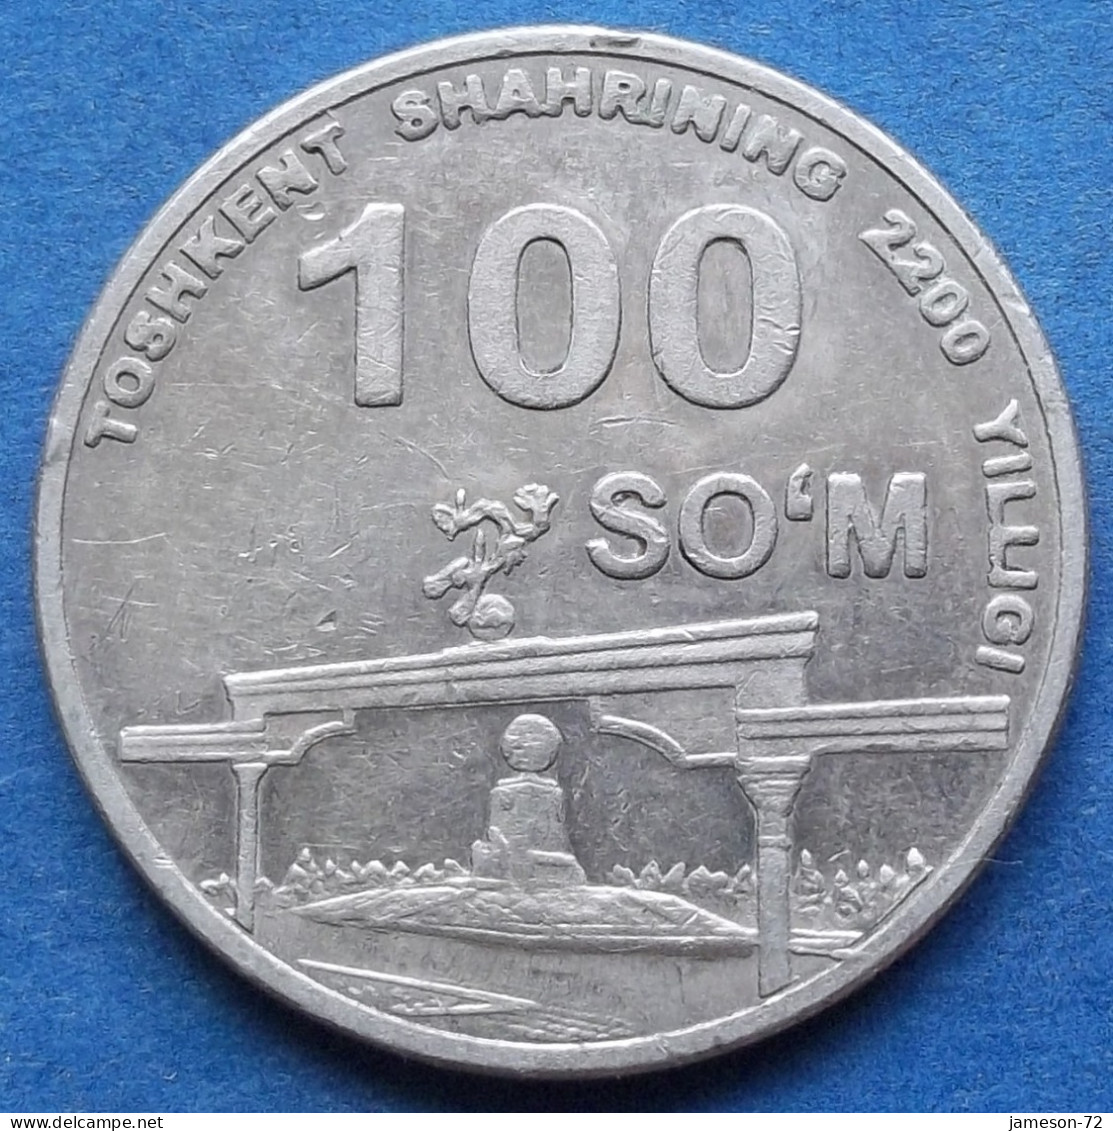 UZBEKISTAN - 100 So'm 2009 "Arch Of Independence" KM# 31 - Edelweiss Coins - Uzbekistan